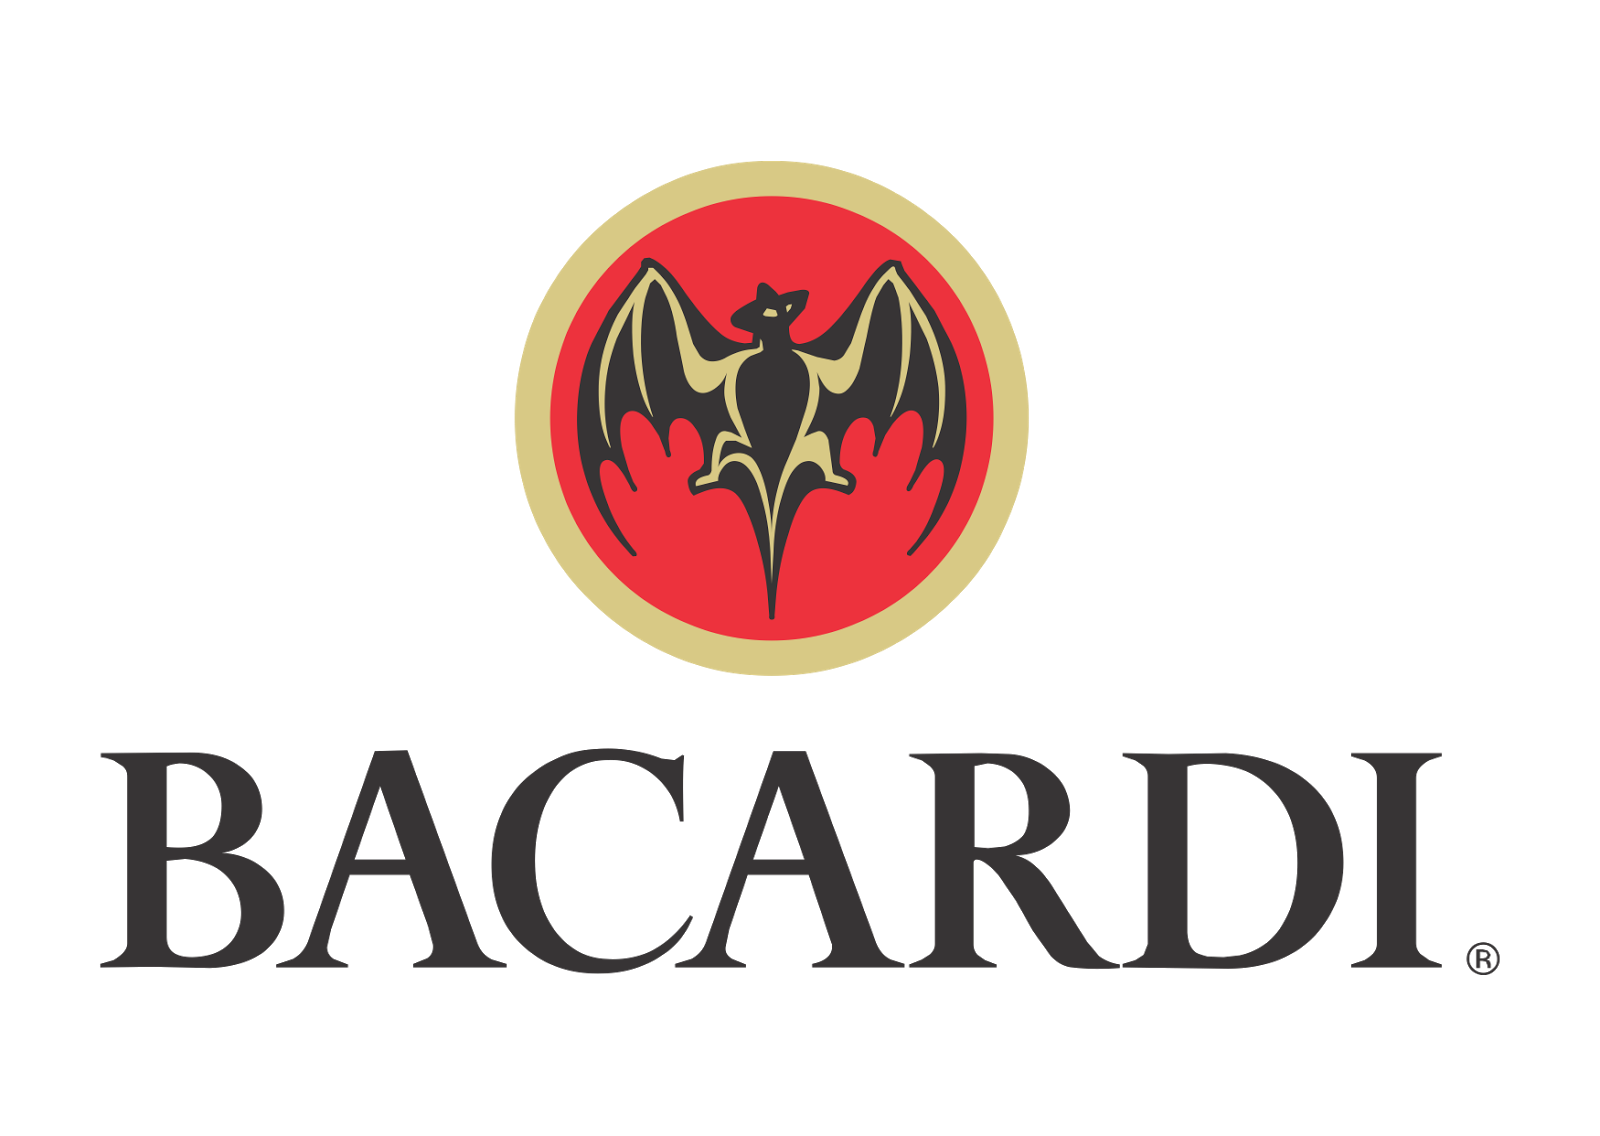 Filename: Bacardi-bat-Logo.pn